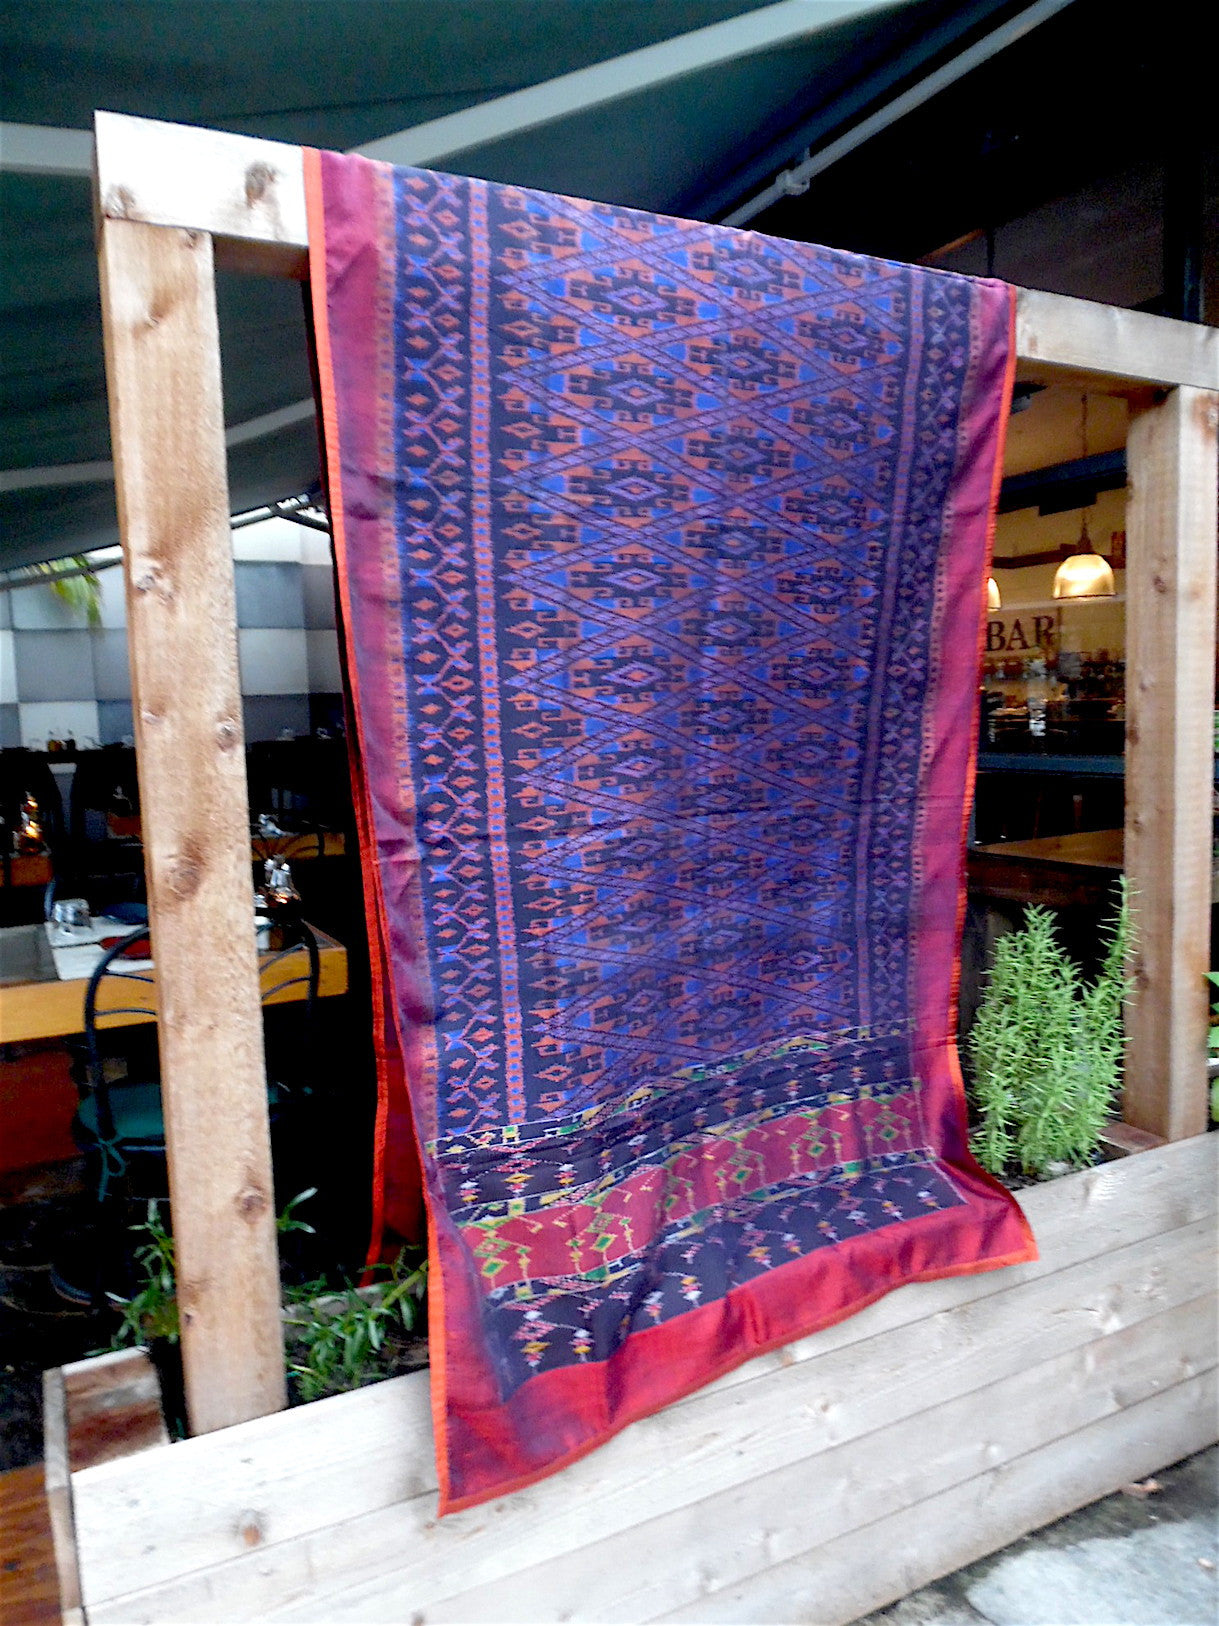 Silk Ikat Textile Wall Hanging Throw Royal Blue Orange